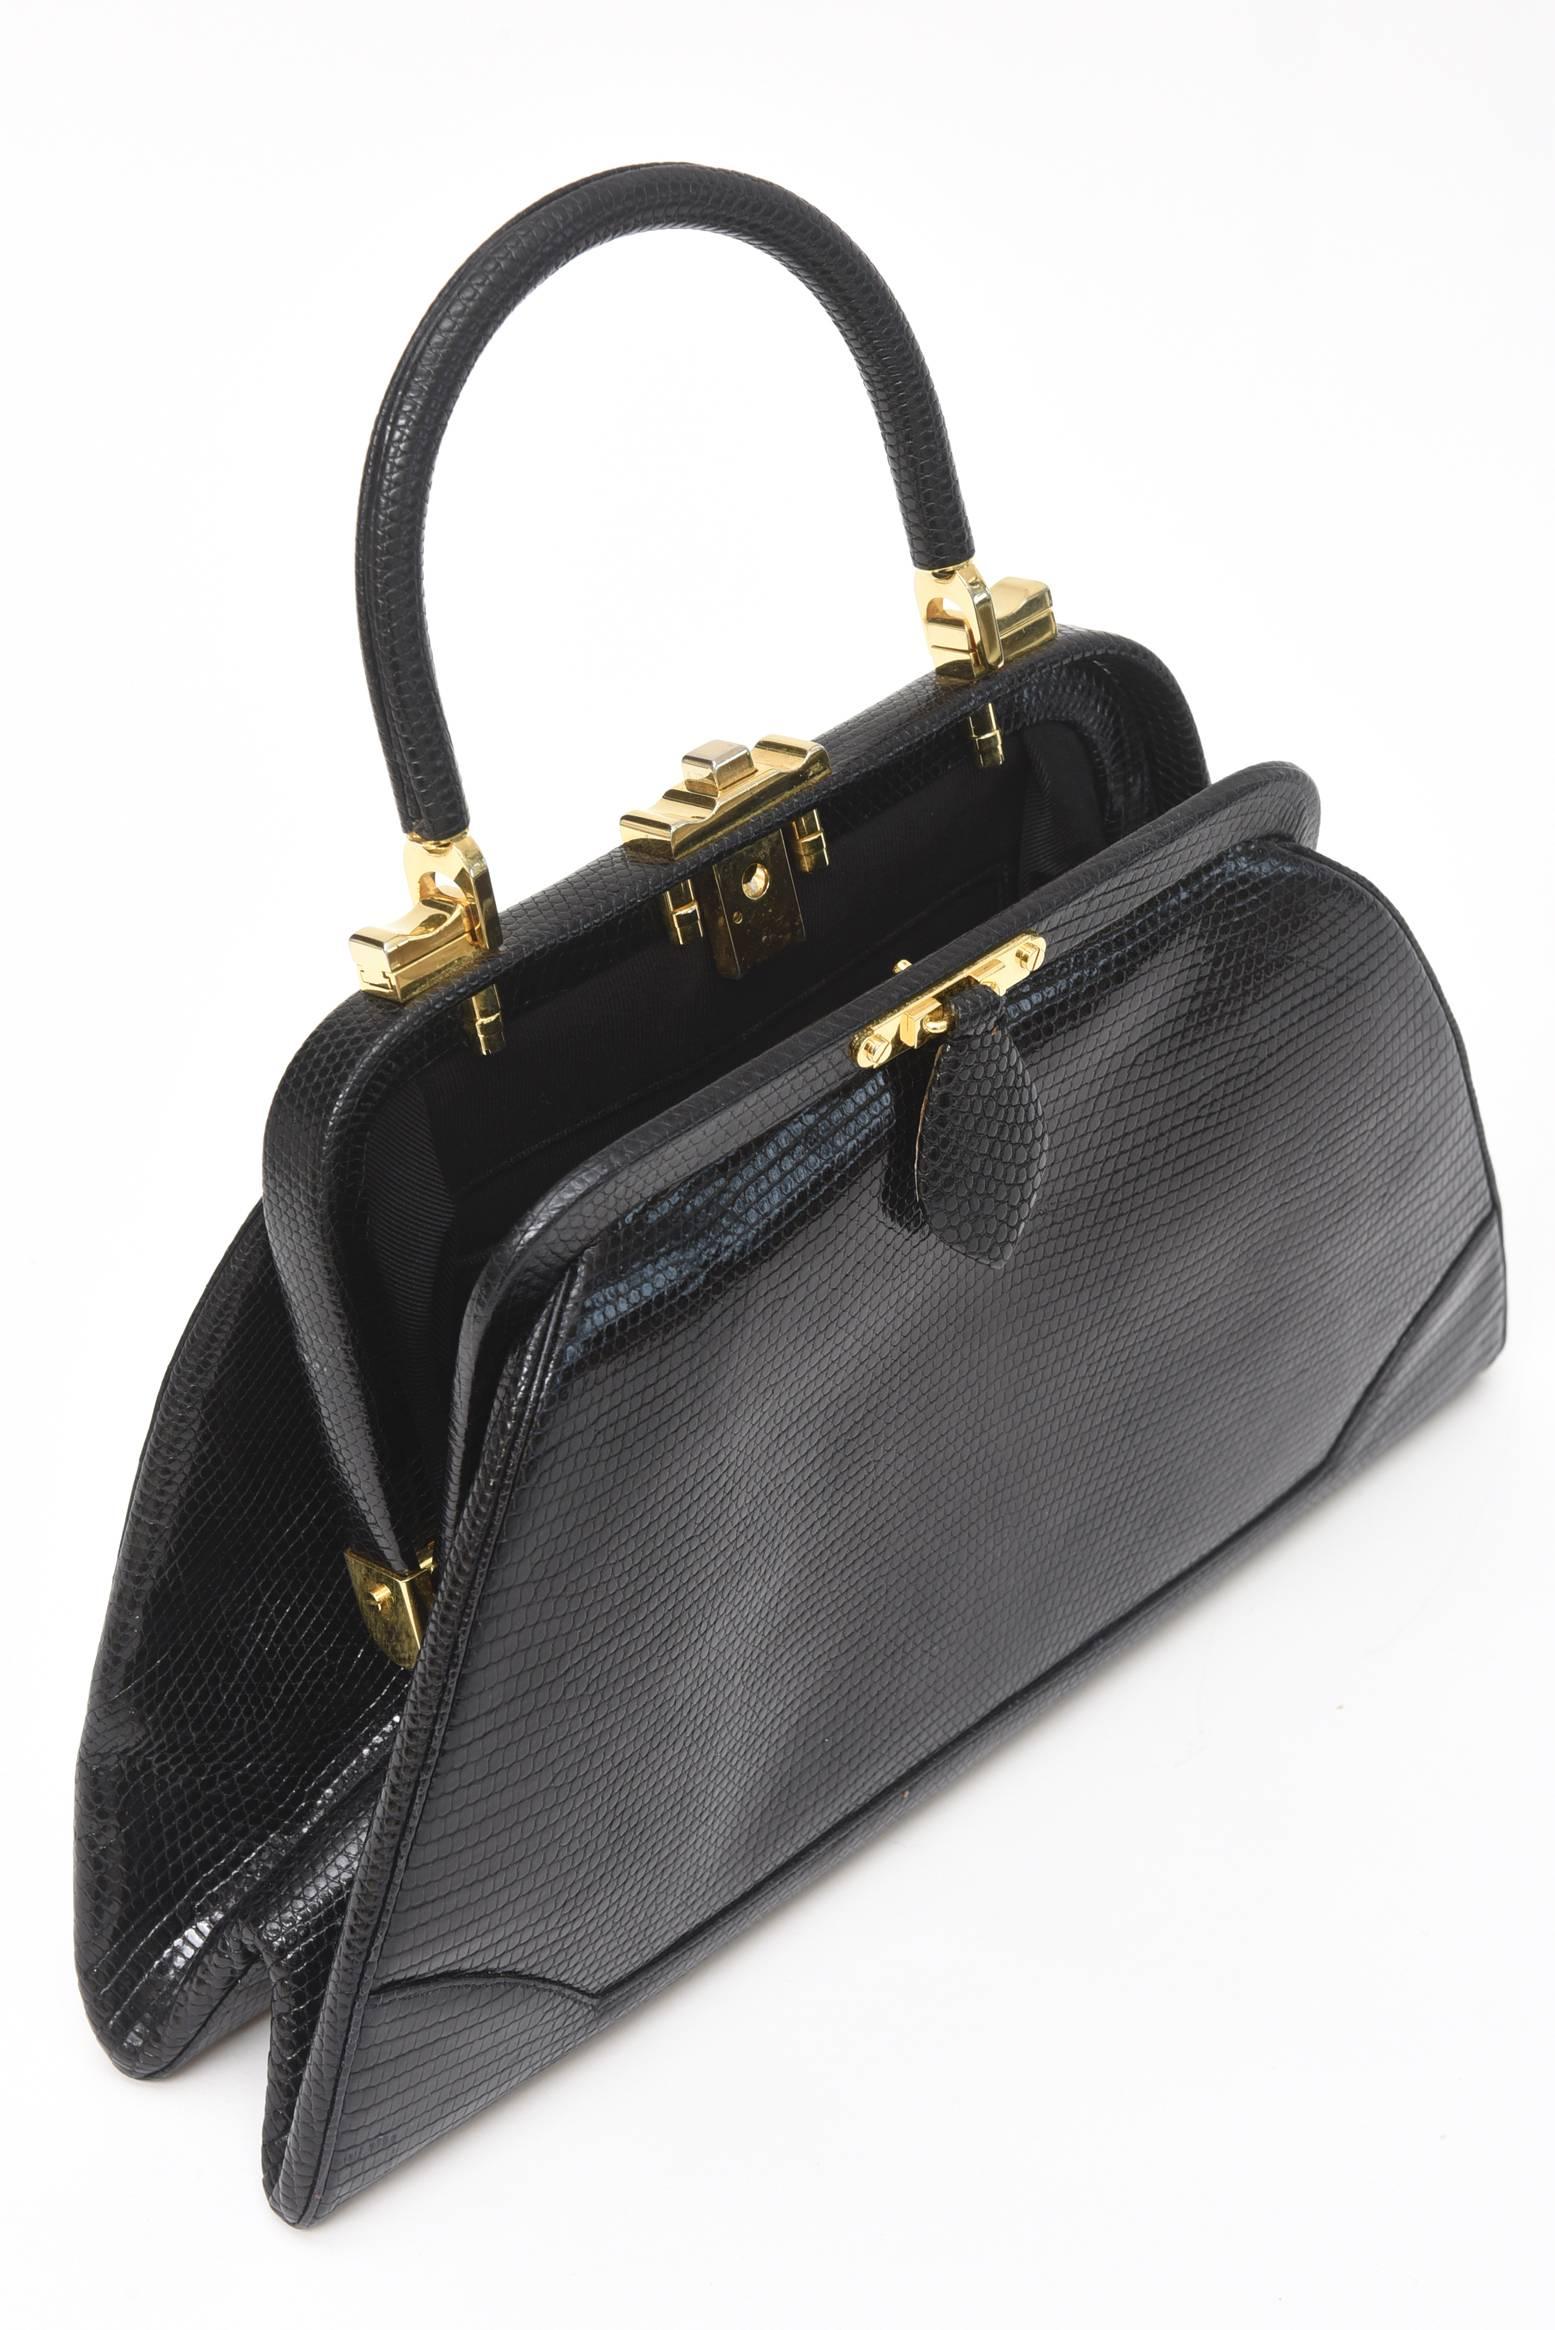 Judith Leiber Black Lizard Kelly Handbag Vintage 3